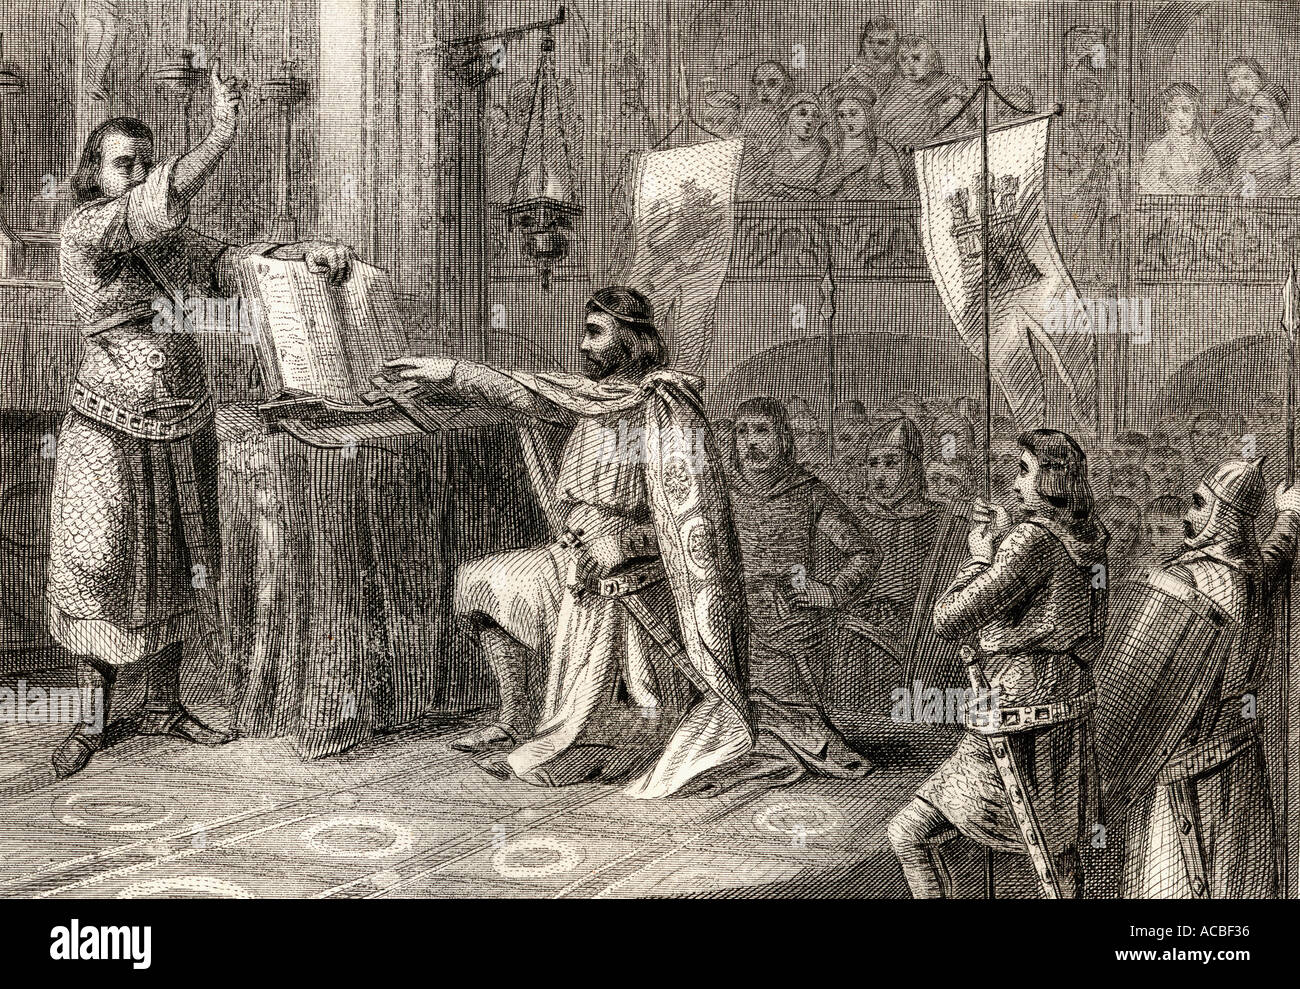 Il re Alfonso VI il giuramento di El Cid in Santa Gadea chiesa, Burgos, che egli non ha avuto alcuna parte nella morte del re Sancho II. Foto Stock